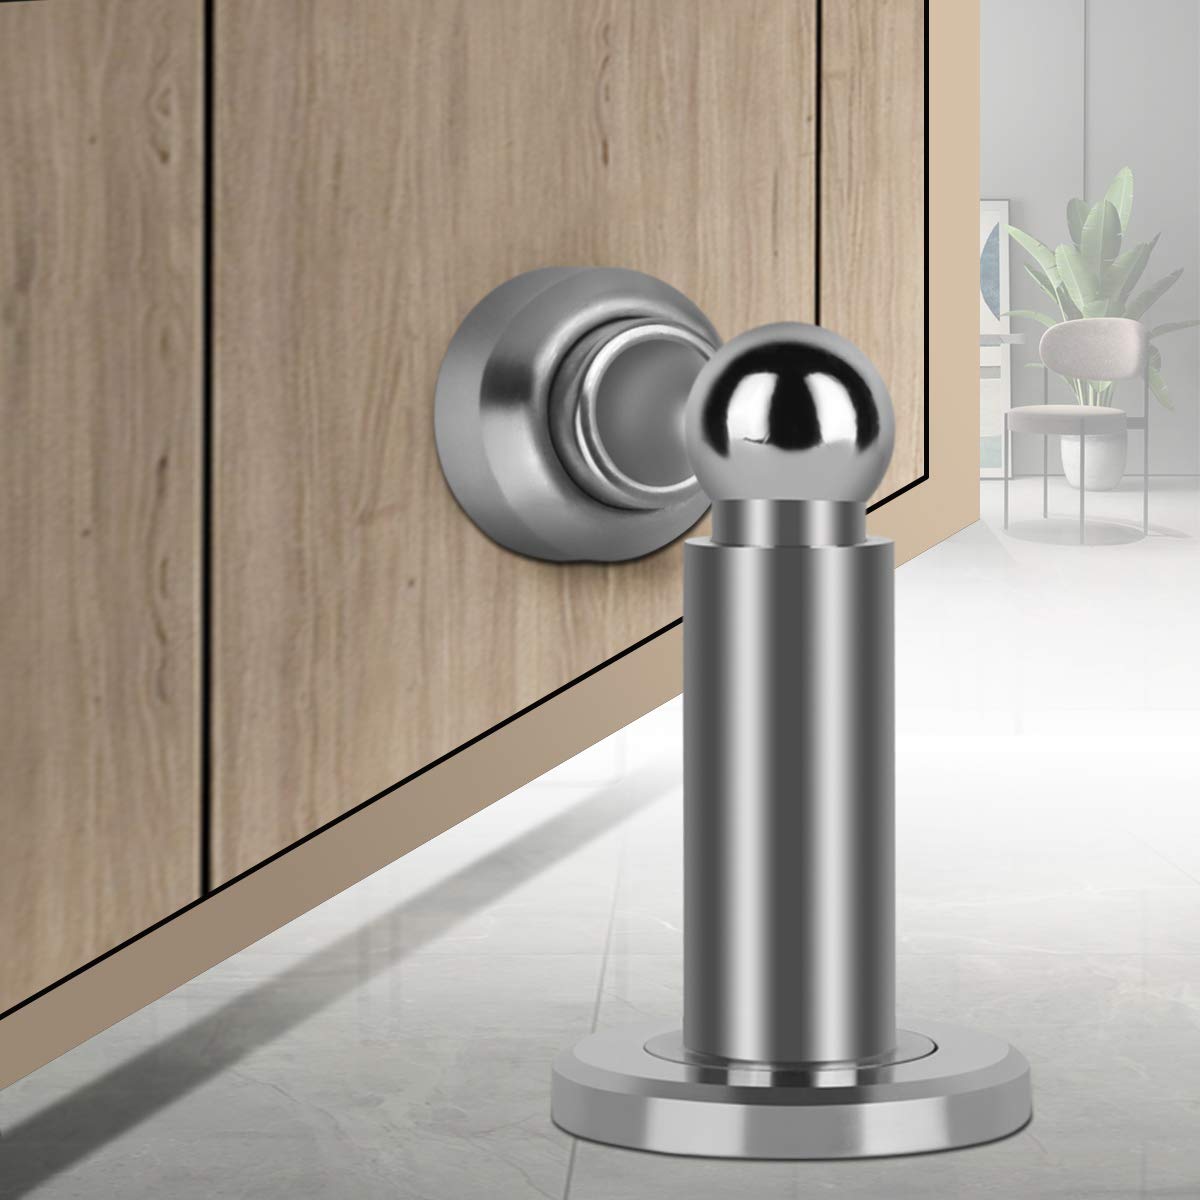 Hommyzone Adjustable Height Magnetic Door Stopper,Heavy Duty Magnetic Door Stop, 304 Stainless Steel Door Holder with Wall&Floor Mounted...(Silver)